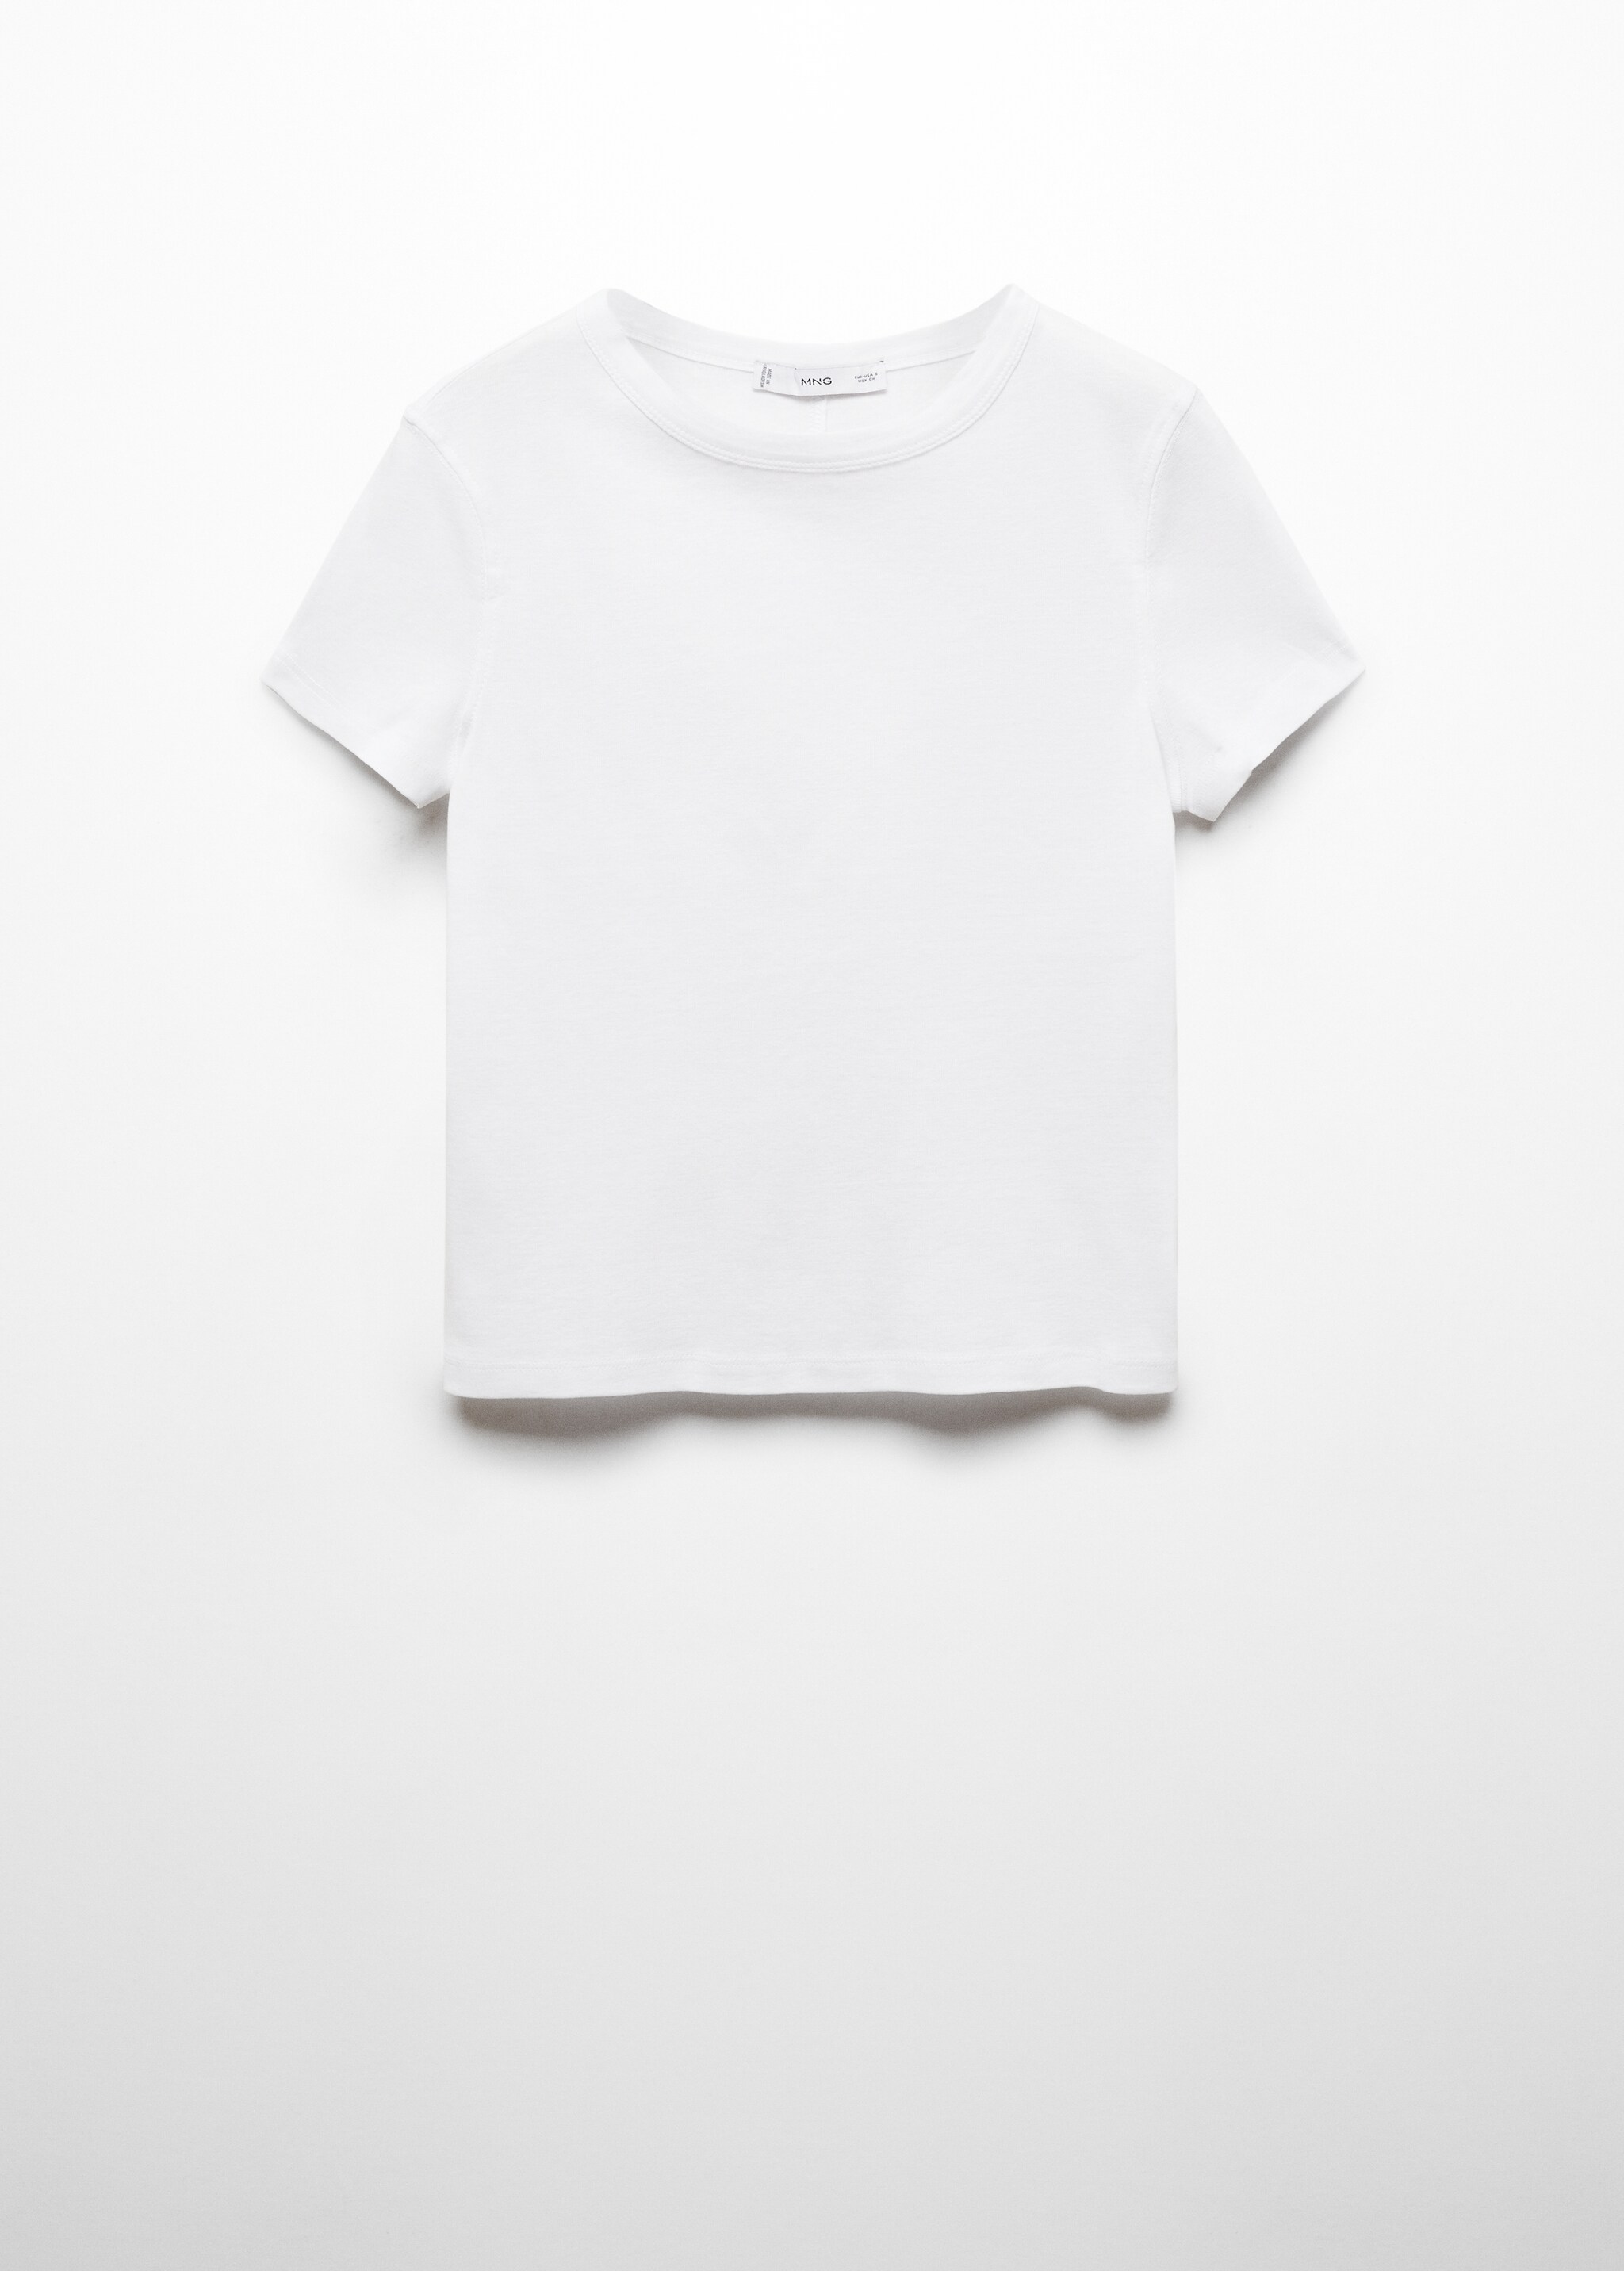 Camiseta 100% algodón  - Artículo sin modelo